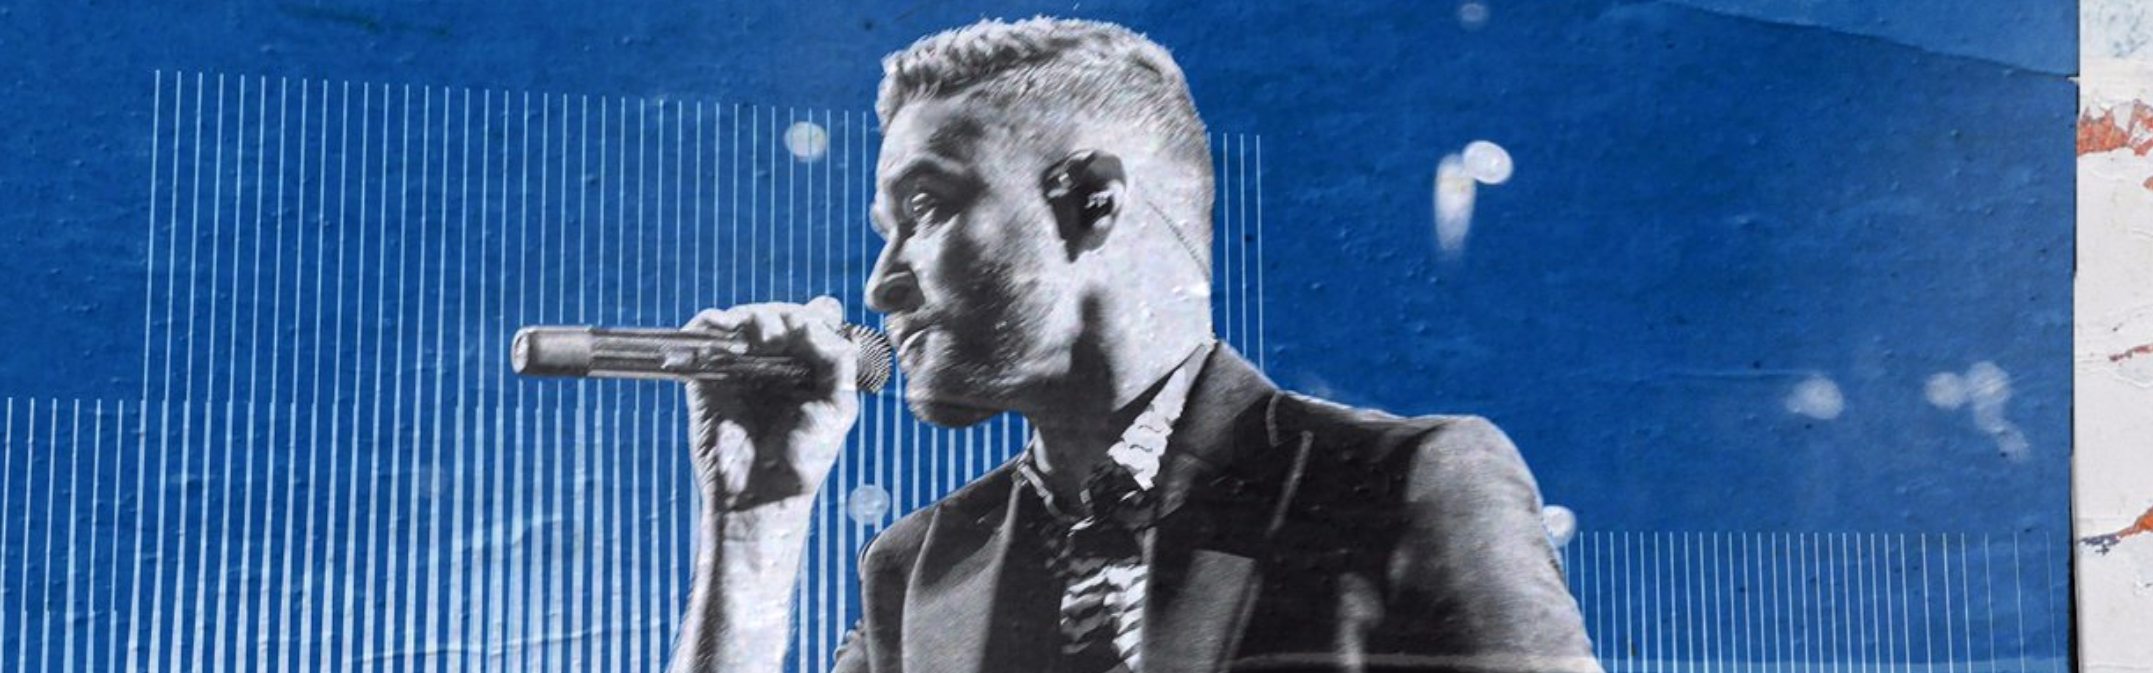 Timberlake lang